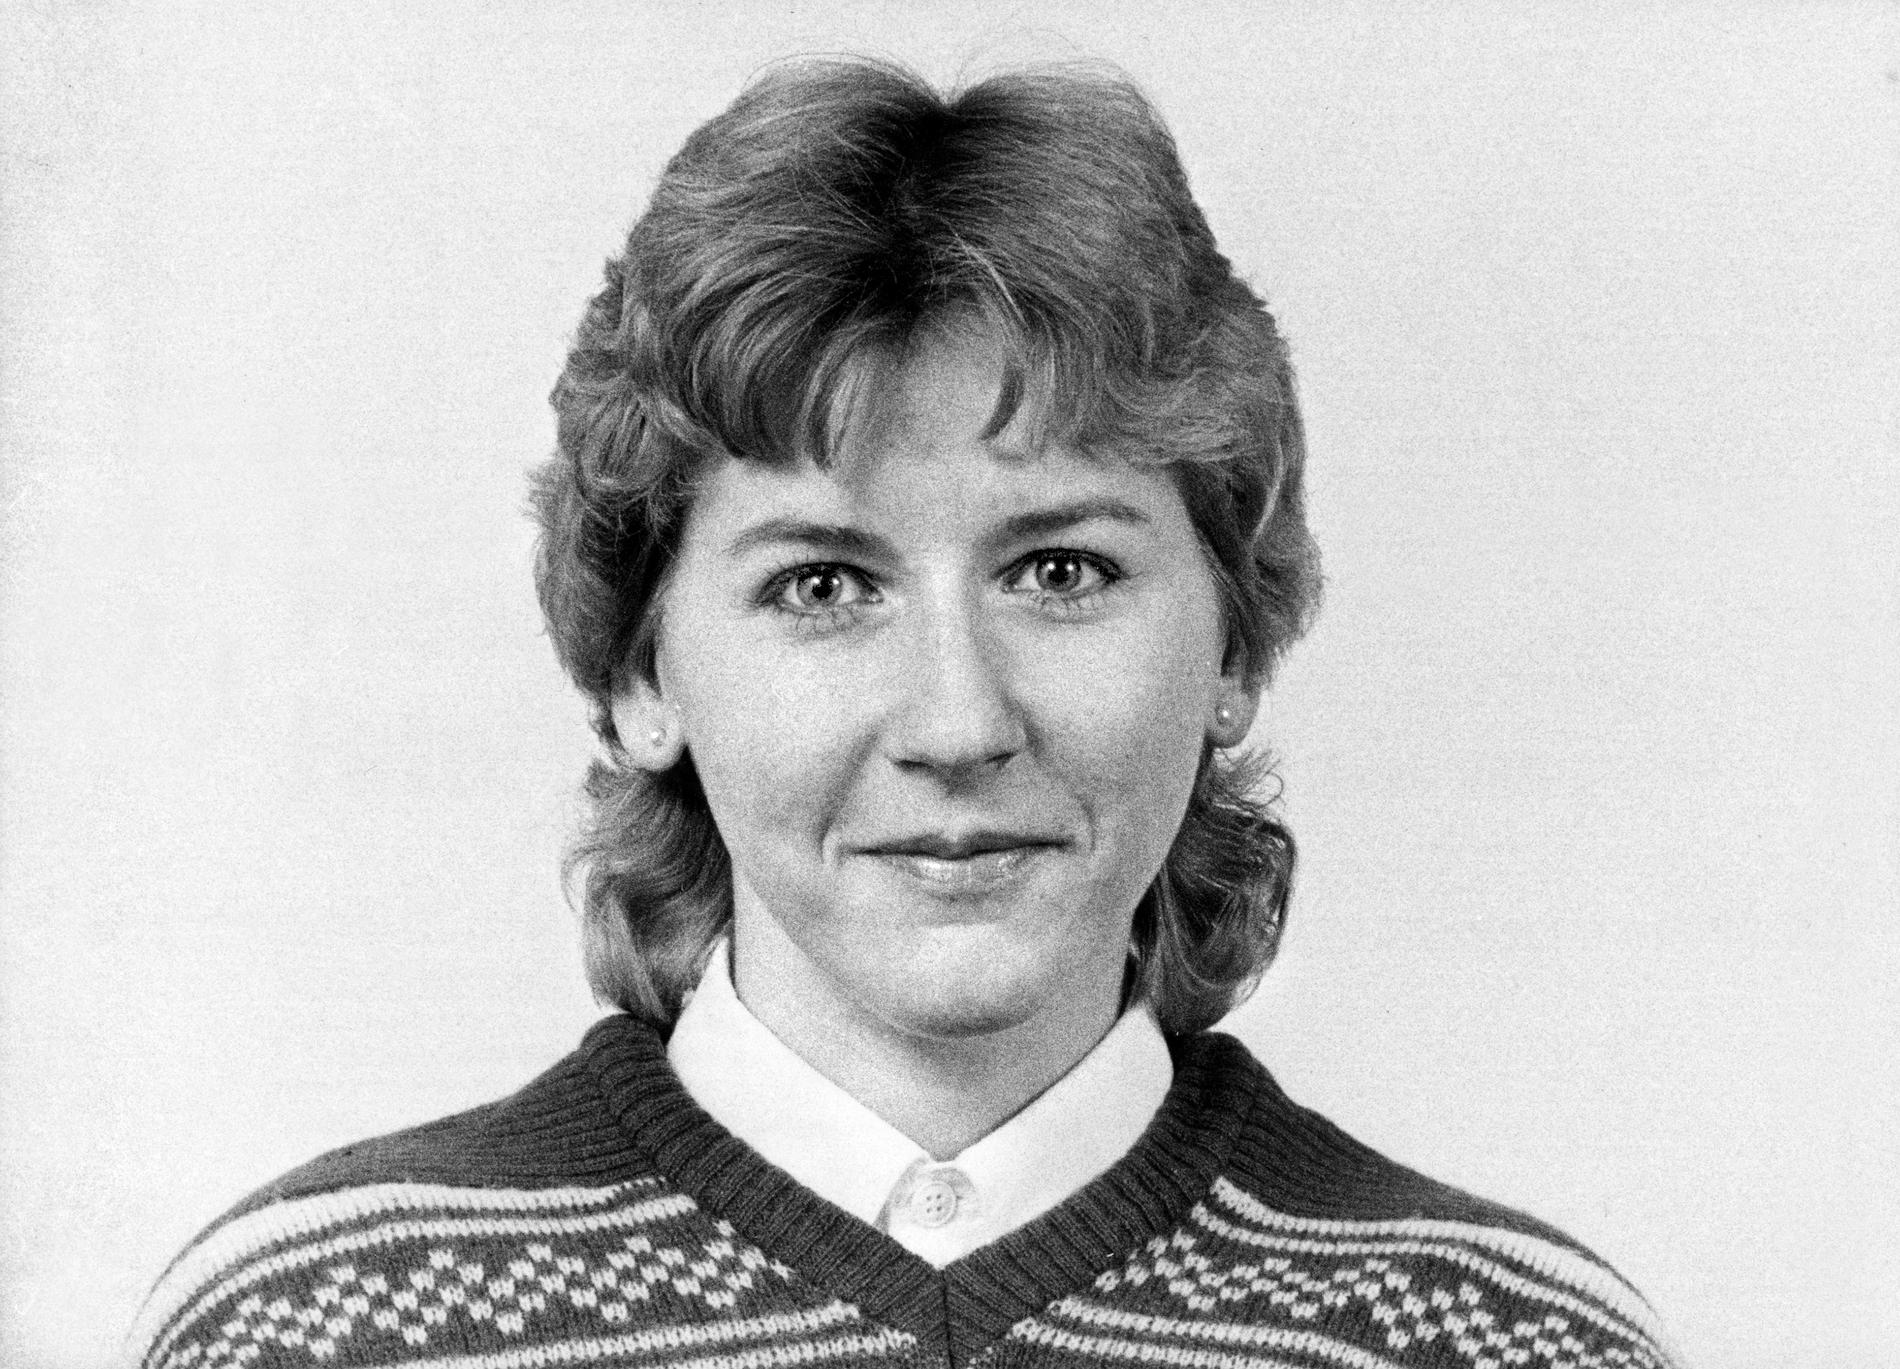 Dåvarande riksdagsledamoten Margot Wallström fotograferad 1982.